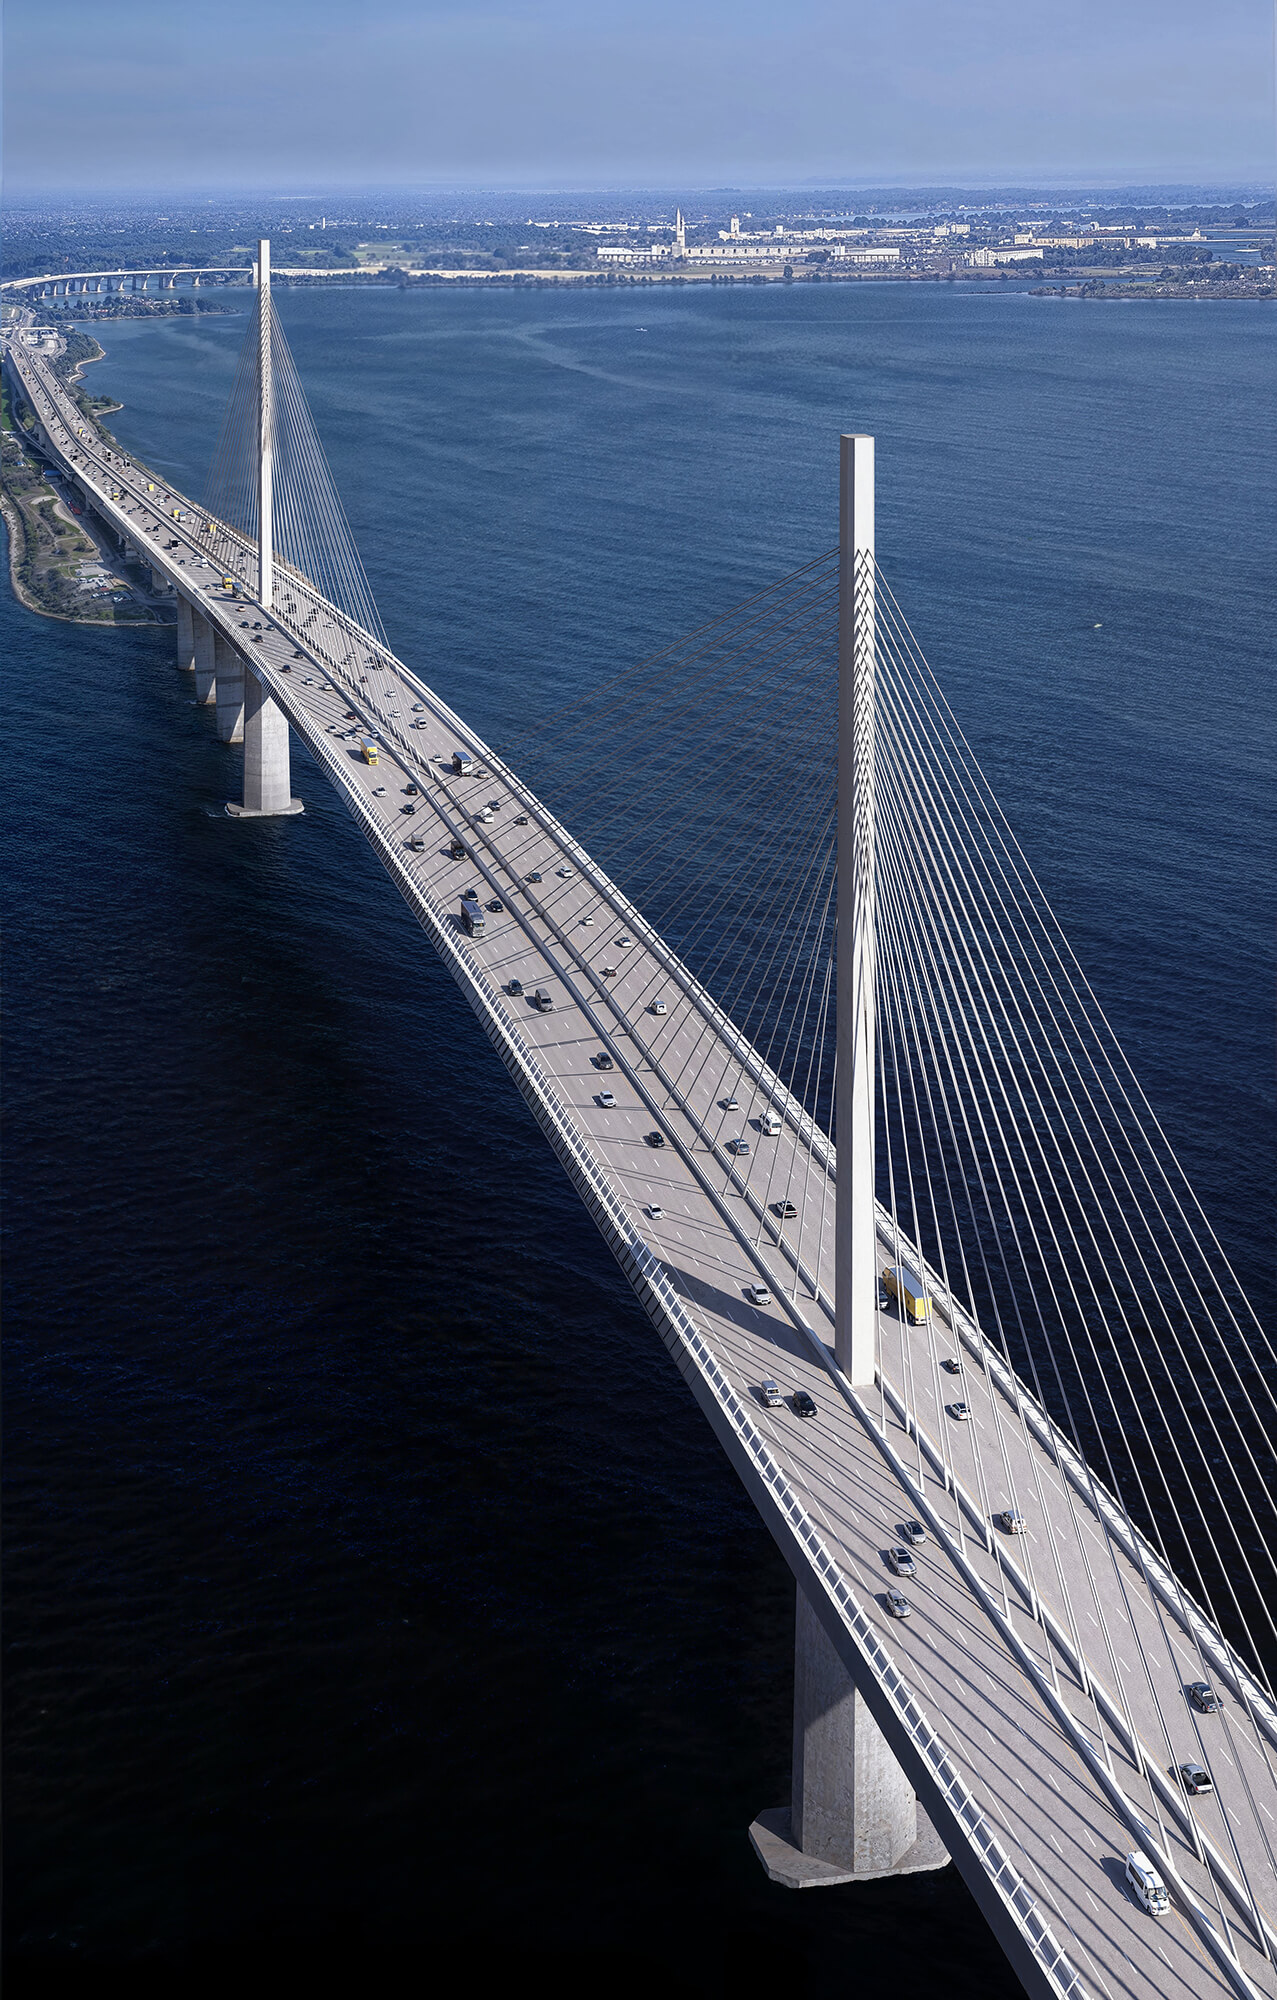 rendering of cars driving on bridge